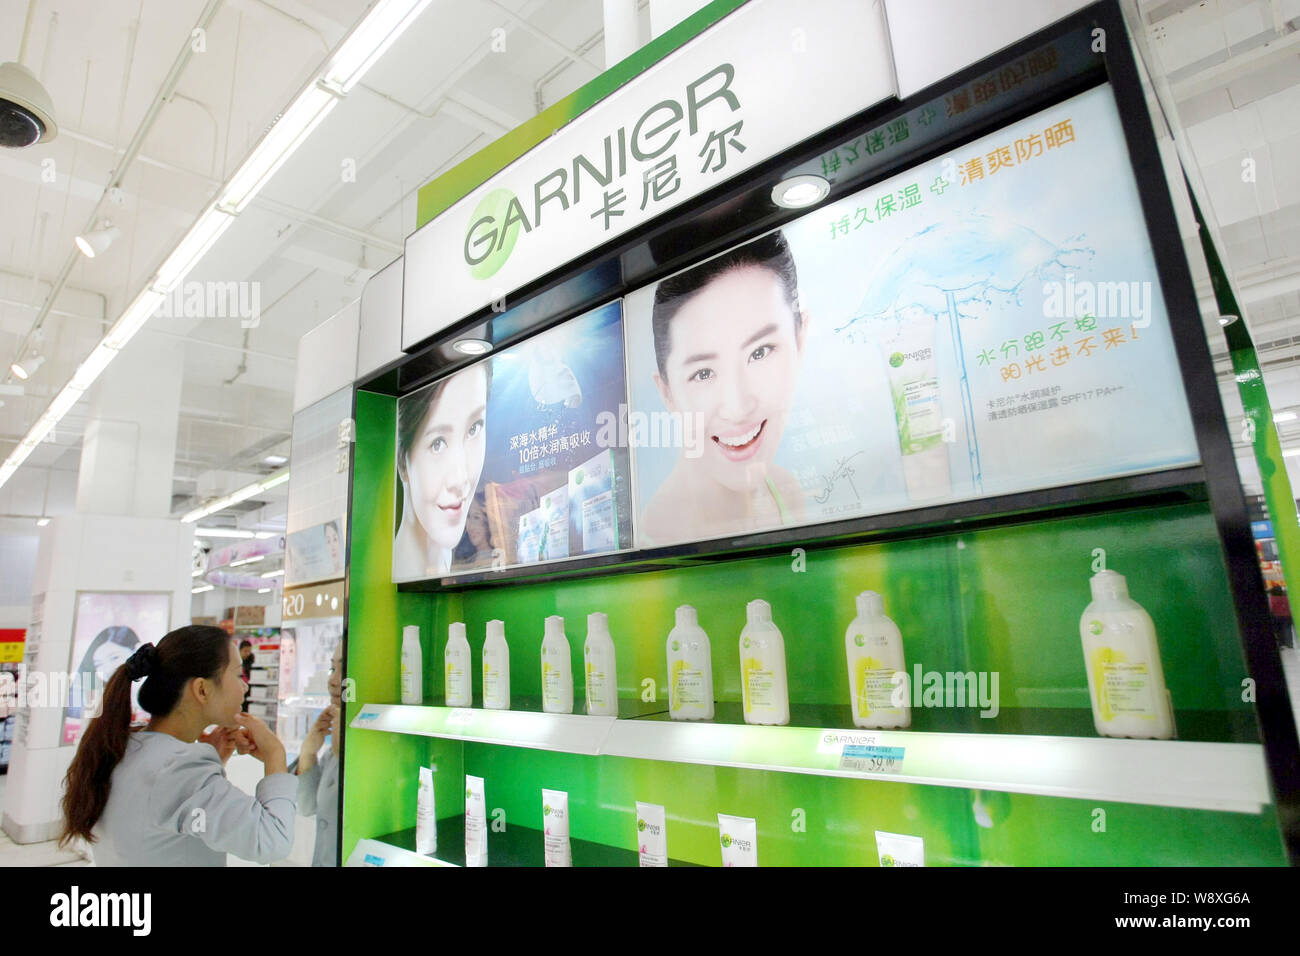 Garnier cosmetici e prodotti per la cura della pelle di LOreal sono in vendita in un supermercato a Shanghai in Cina, 8 gennaio 2014. Cosmesi francese maker LOreal S Foto Stock